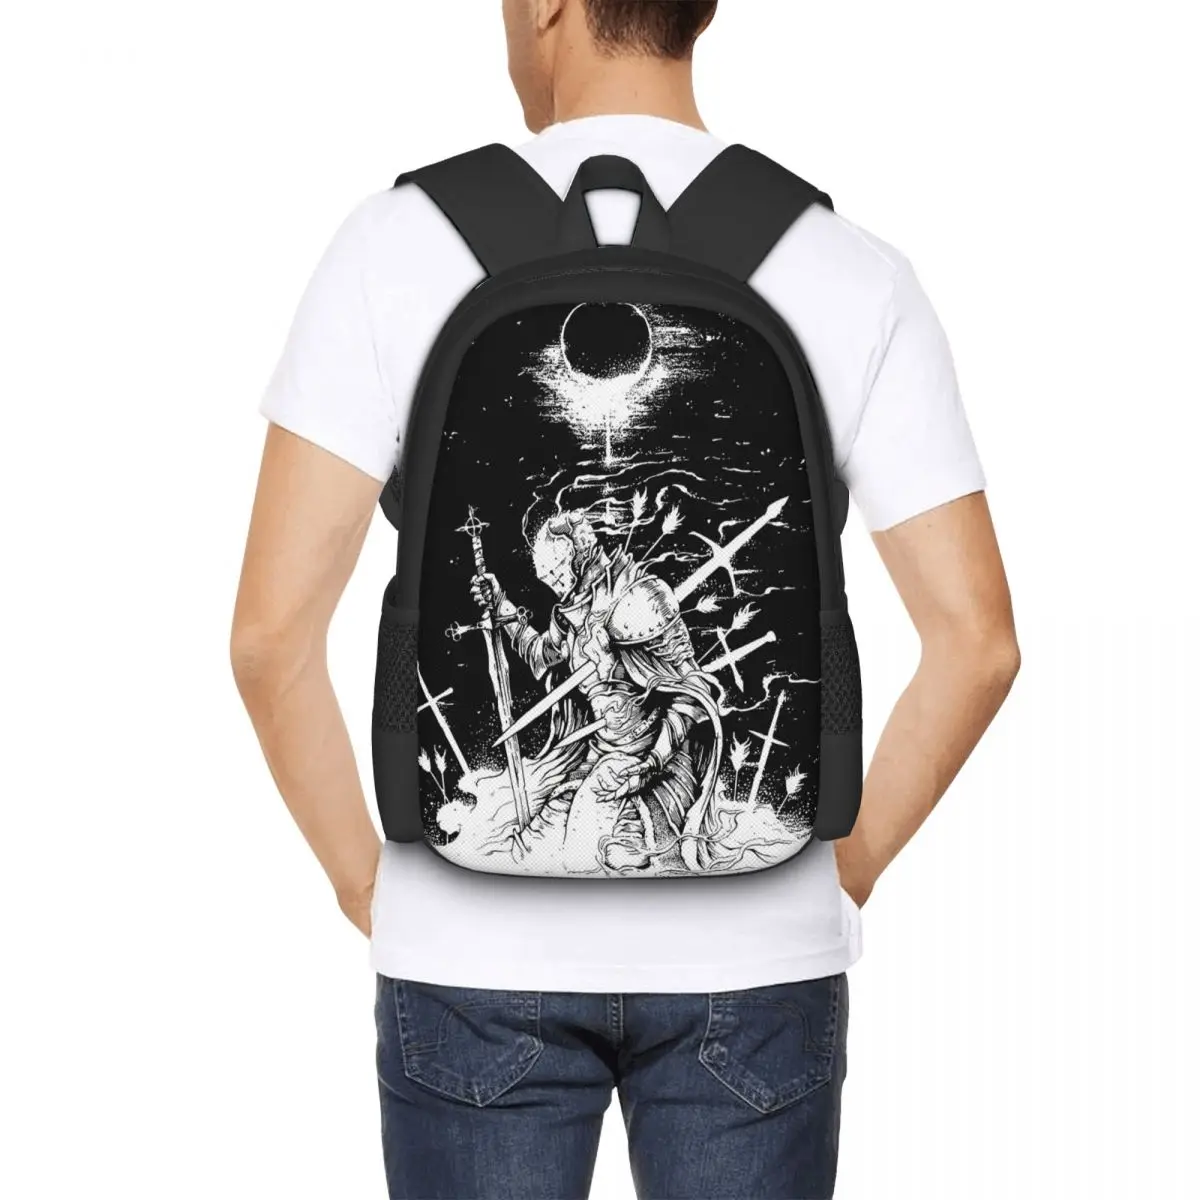 Dark Soul Praise The Sun Backpack for Girls Boys Travel RucksackBackpacks for Teenage school bag